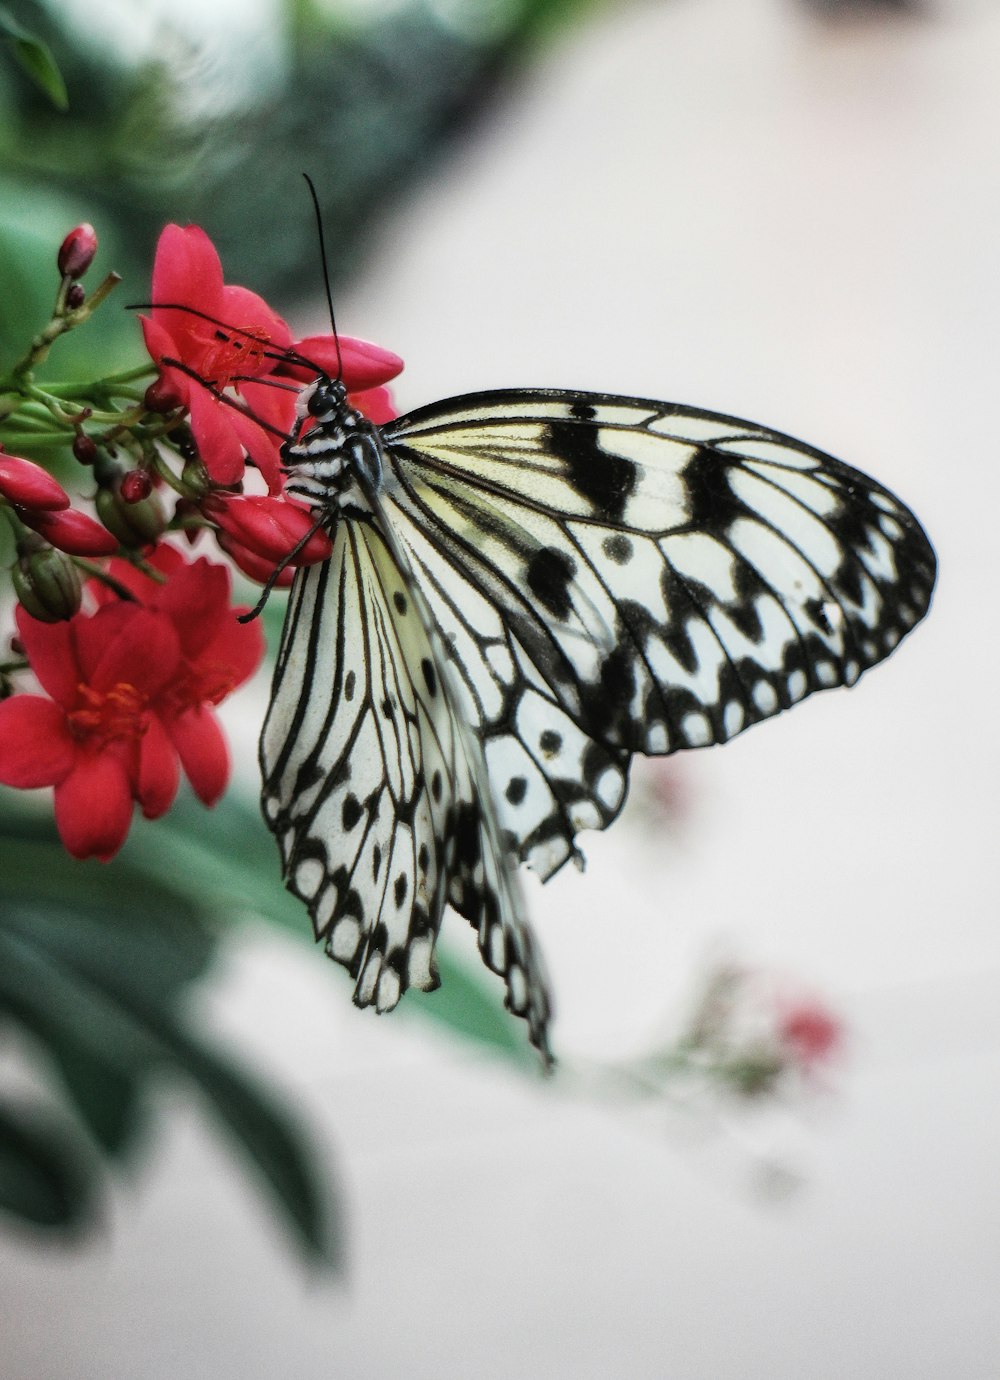 Una mariposa blanca y negra sentada sobre una flor roja